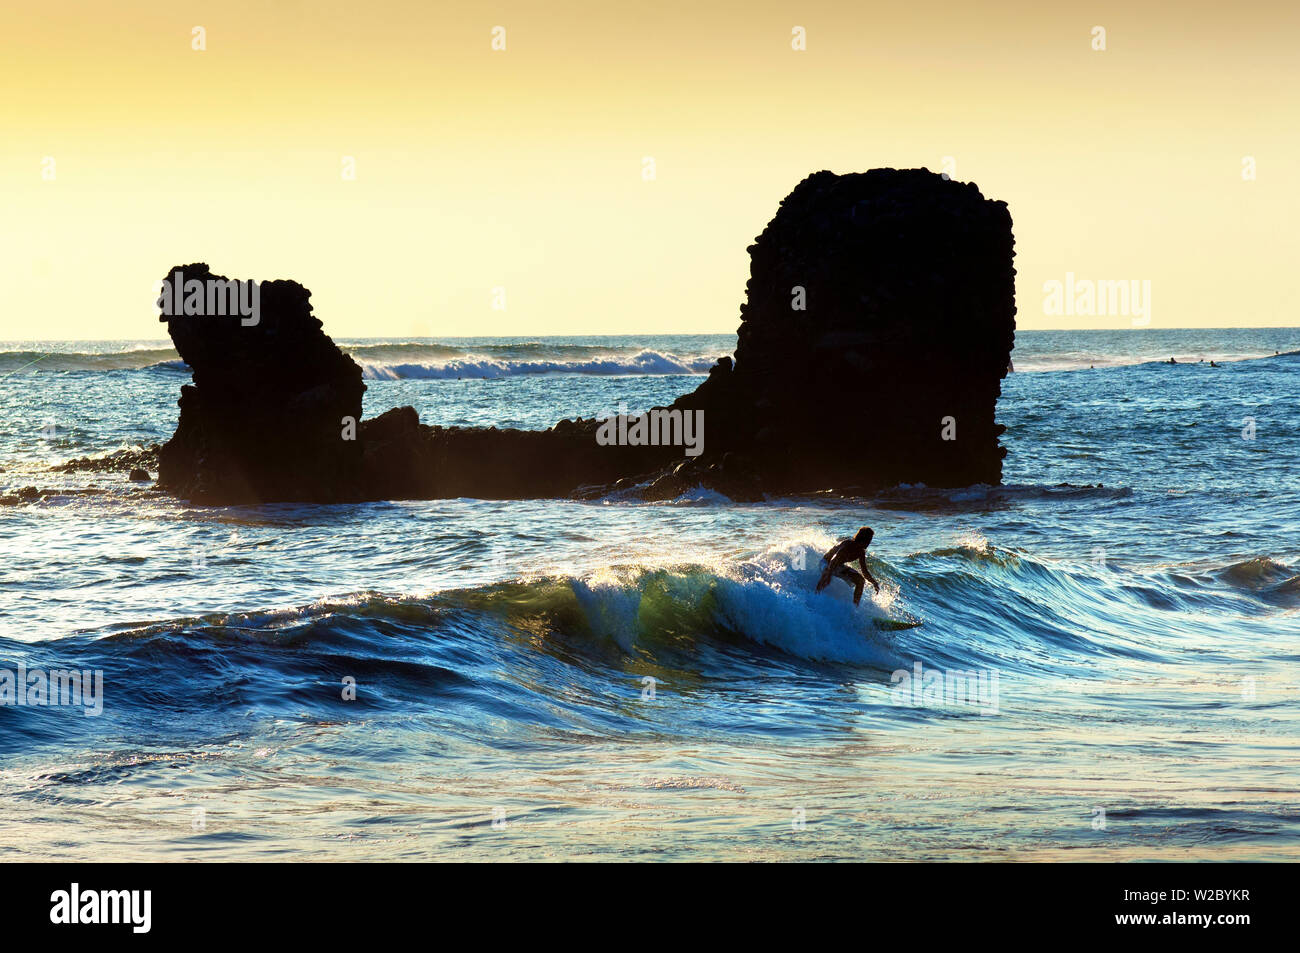 Playa El Tunco, El Salvador, Pacific Ocean Beach, popolare tra i surfisti, grandi onde, chiamato dopo la formazione di roccia, Tunco si traduce per il maiale o suina, la roccia assomiglia a quella di un maiale galleggiante sulla sua schiena Foto Stock